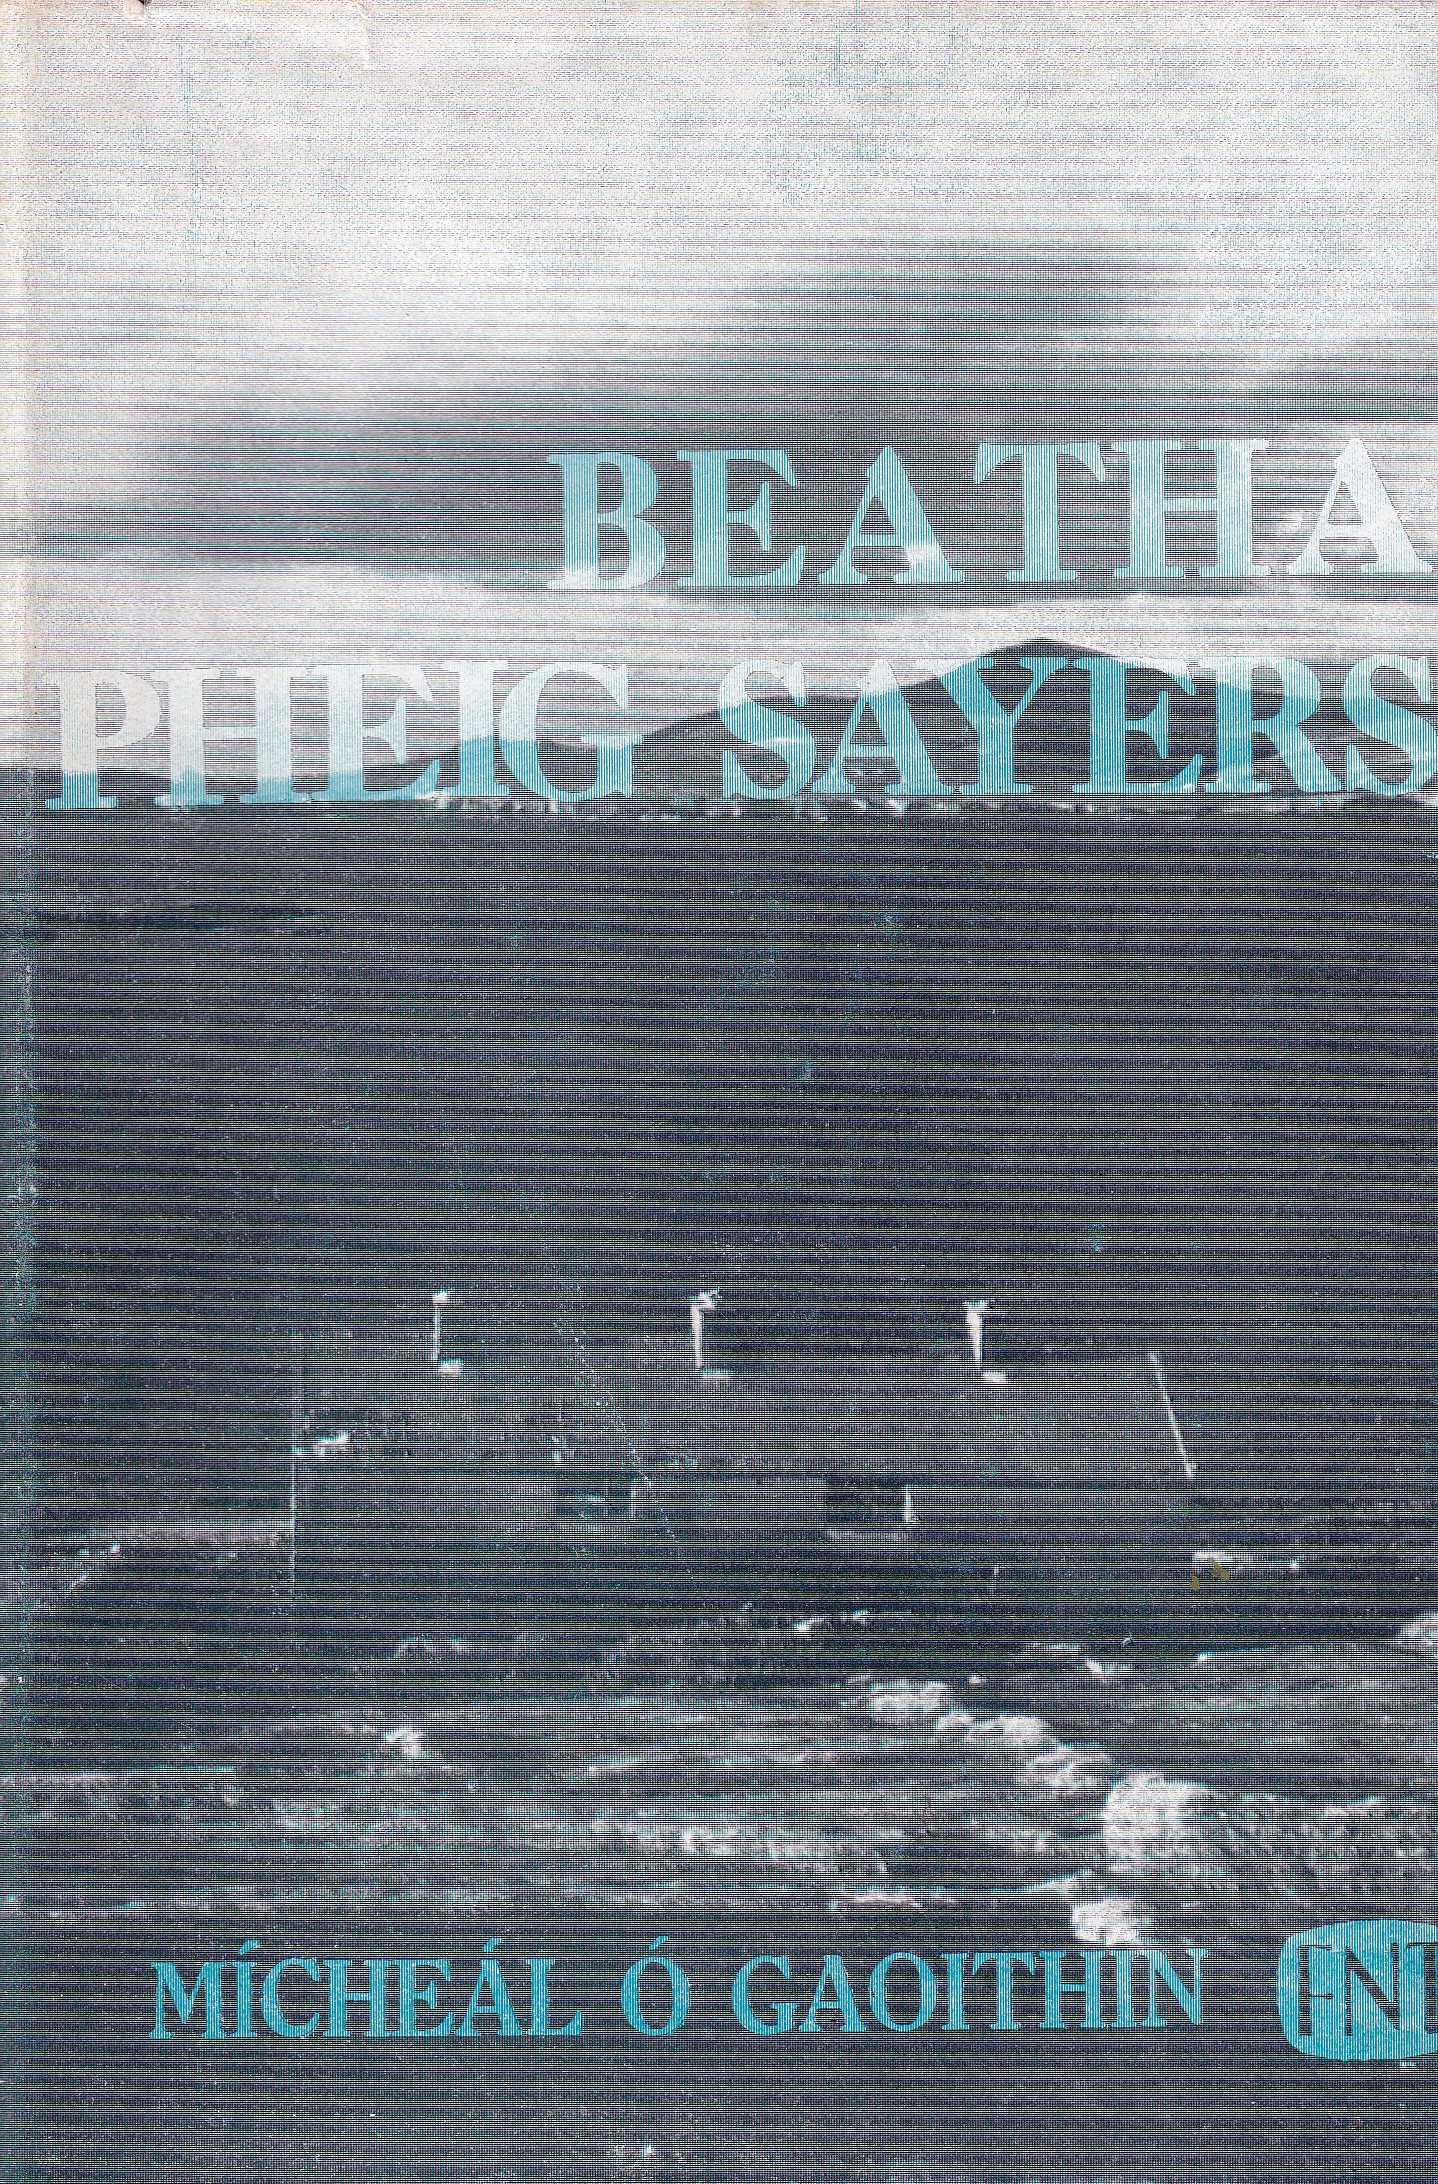 Beatha Pheig Sayers by Mícheál Ó Gaoithin